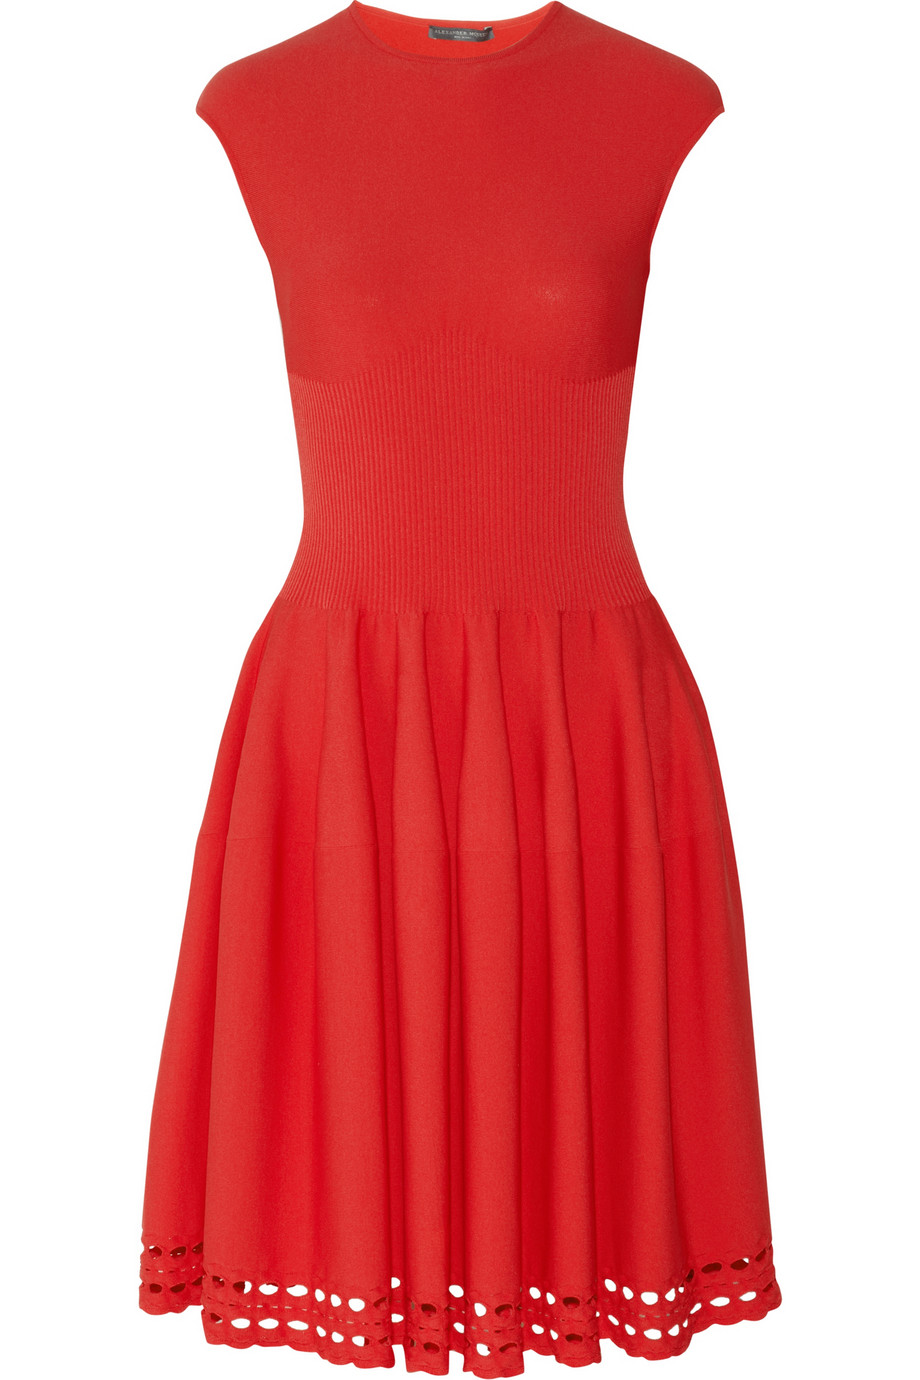 Alexander McQueen Stretchknit Dress in Red - Lyst